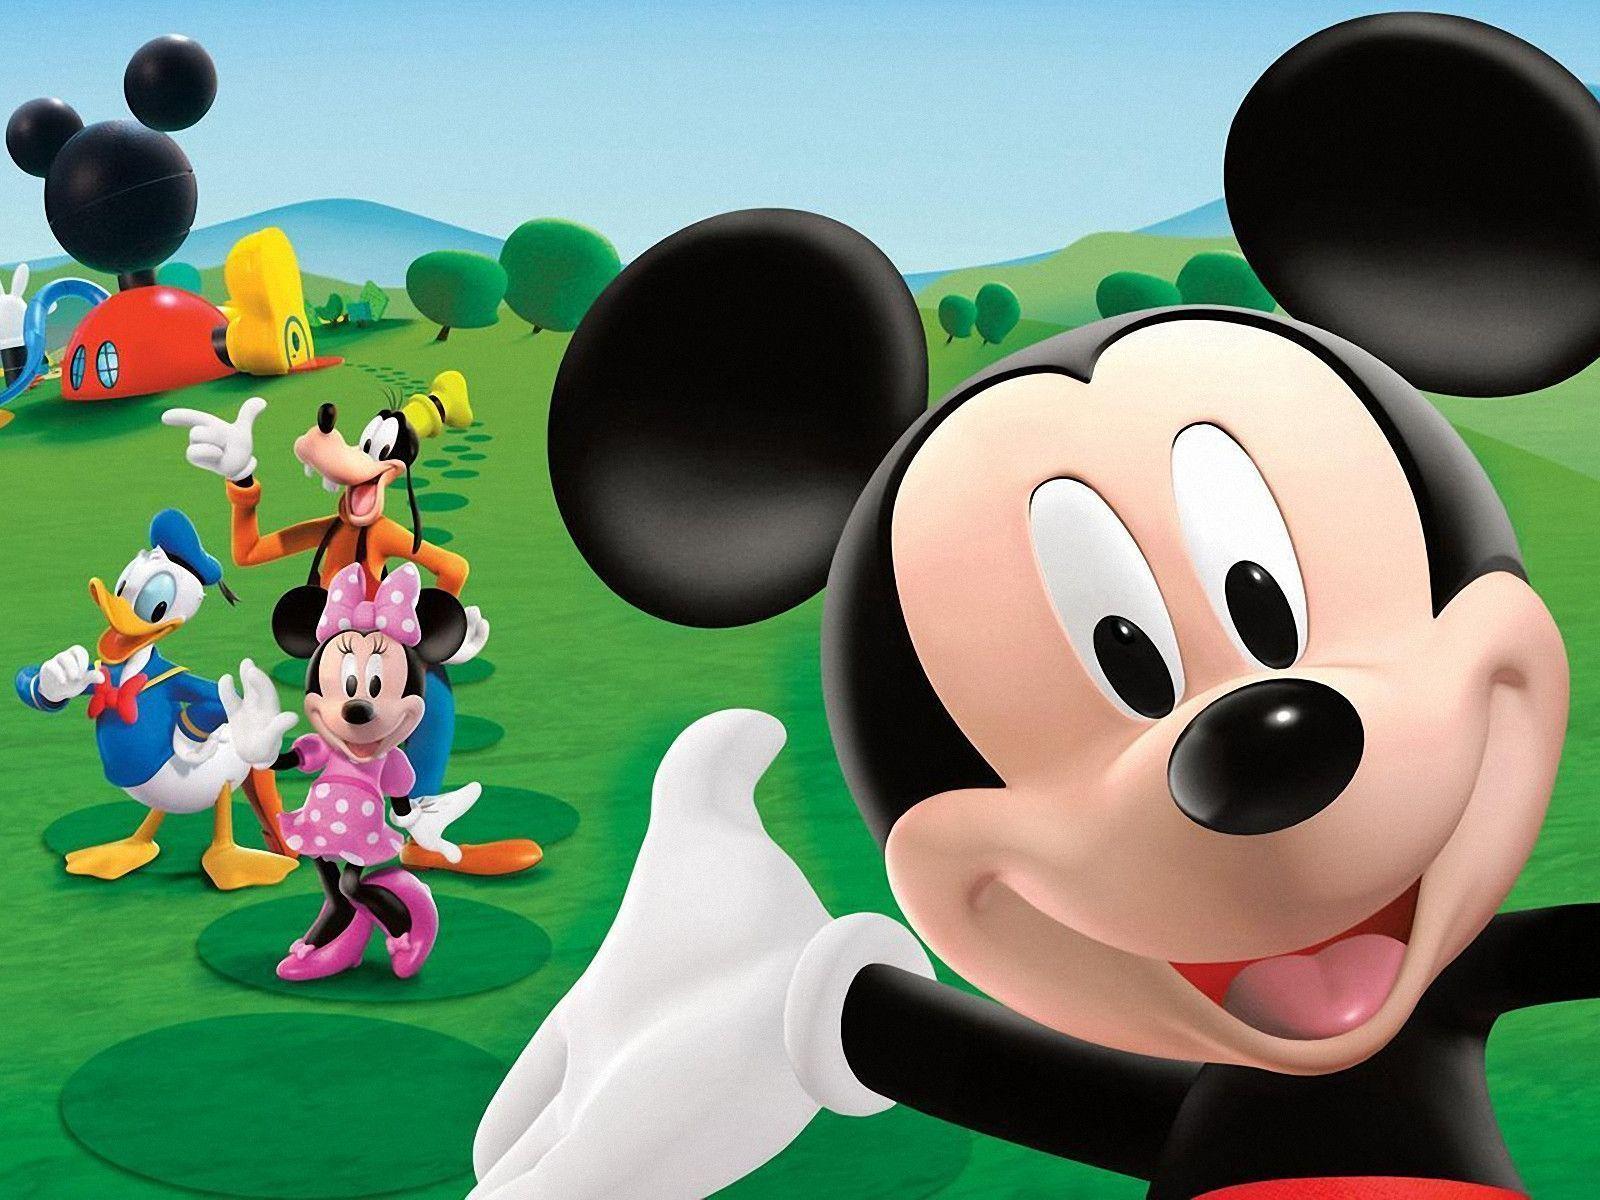 Fondos de Mickey Mouse en MarkInternational.info